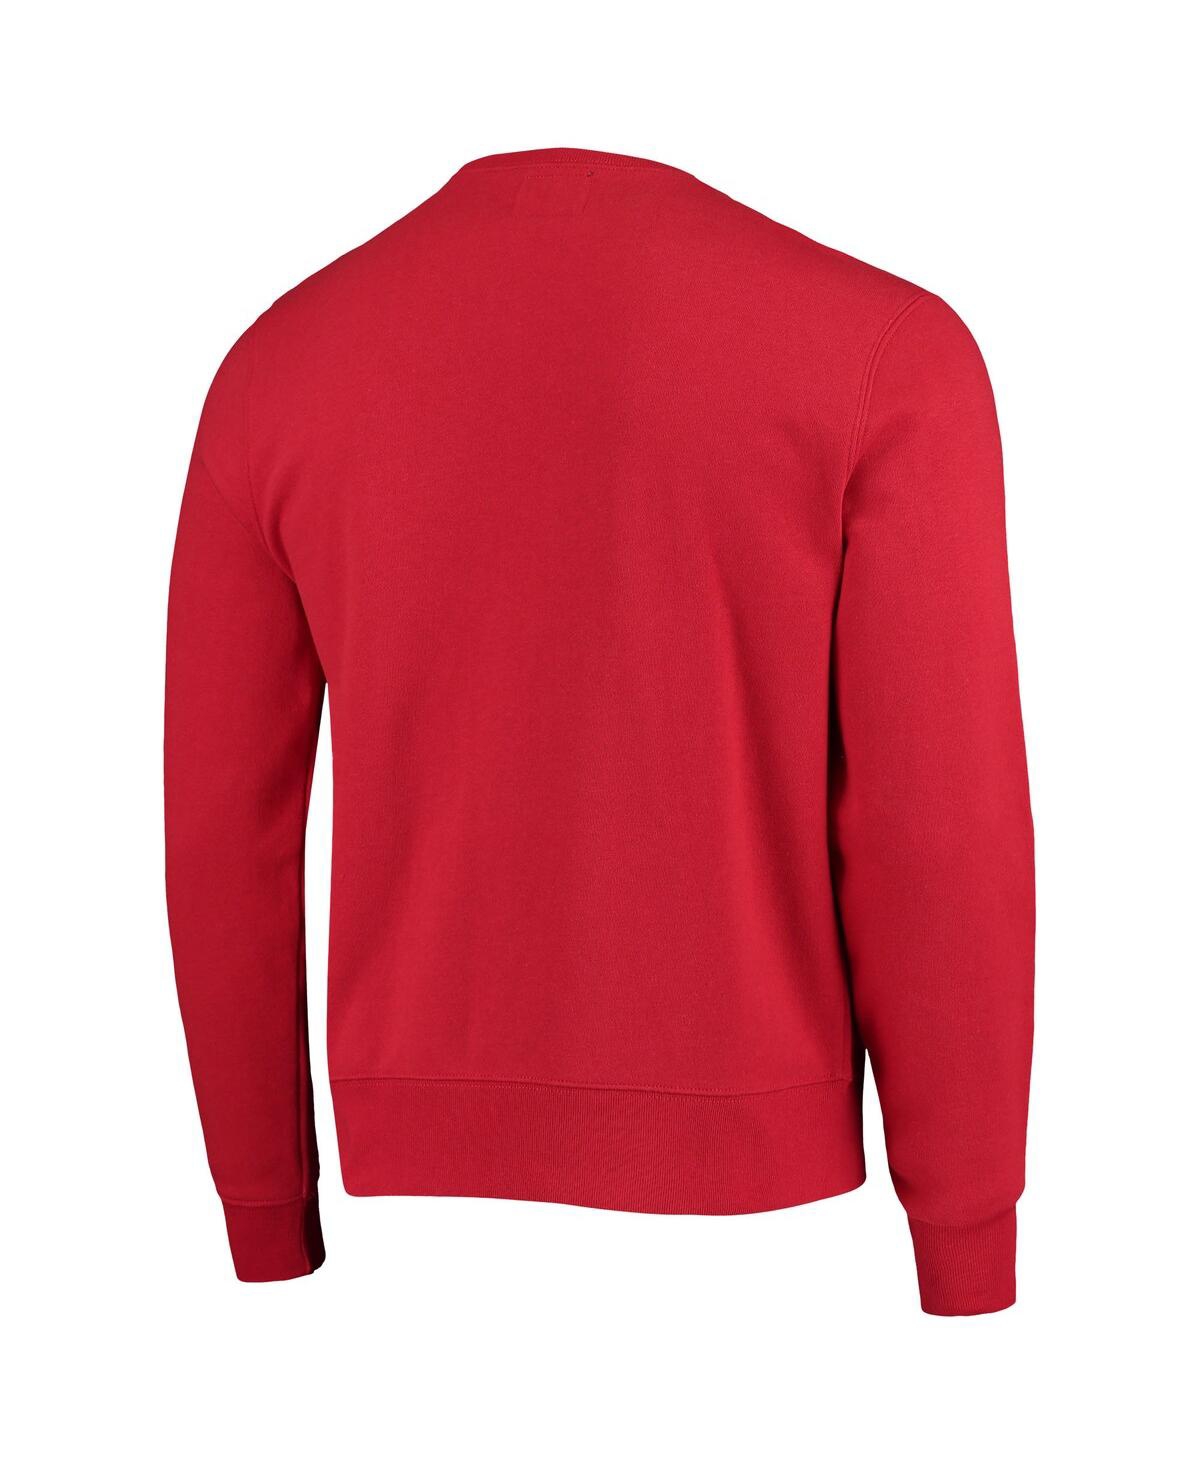 Shop 47 Brand Men's Red Tampa Bay Buccaneers Varsity Arch Headline Fleece Pullover Sweatshirt